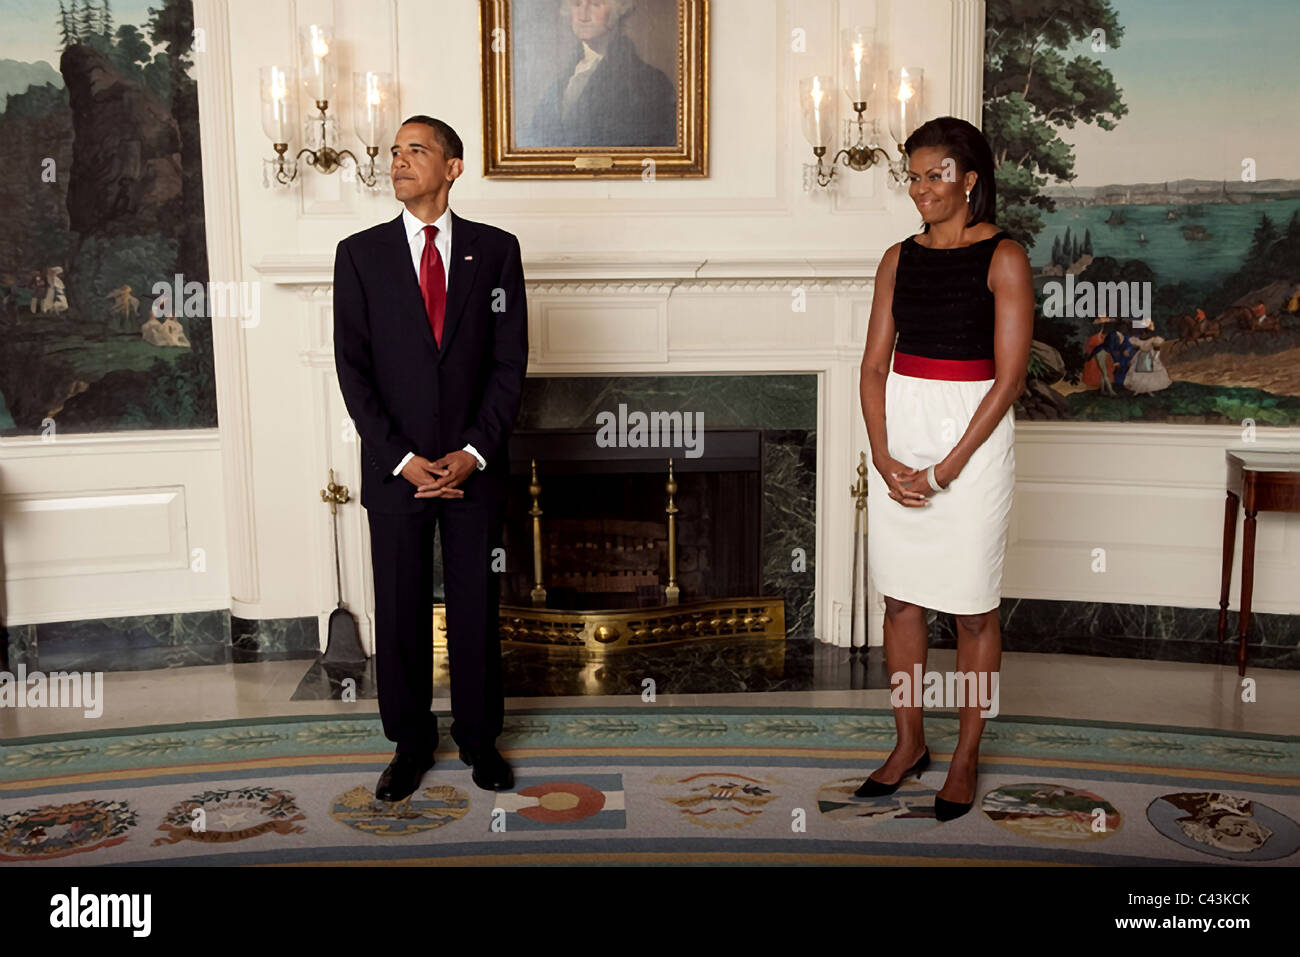 El presidente Barack Obama y la Primera Dama Michelle en la recepción del Embajador en la Casa Blanca, en Washington, D.C. Foto de stock